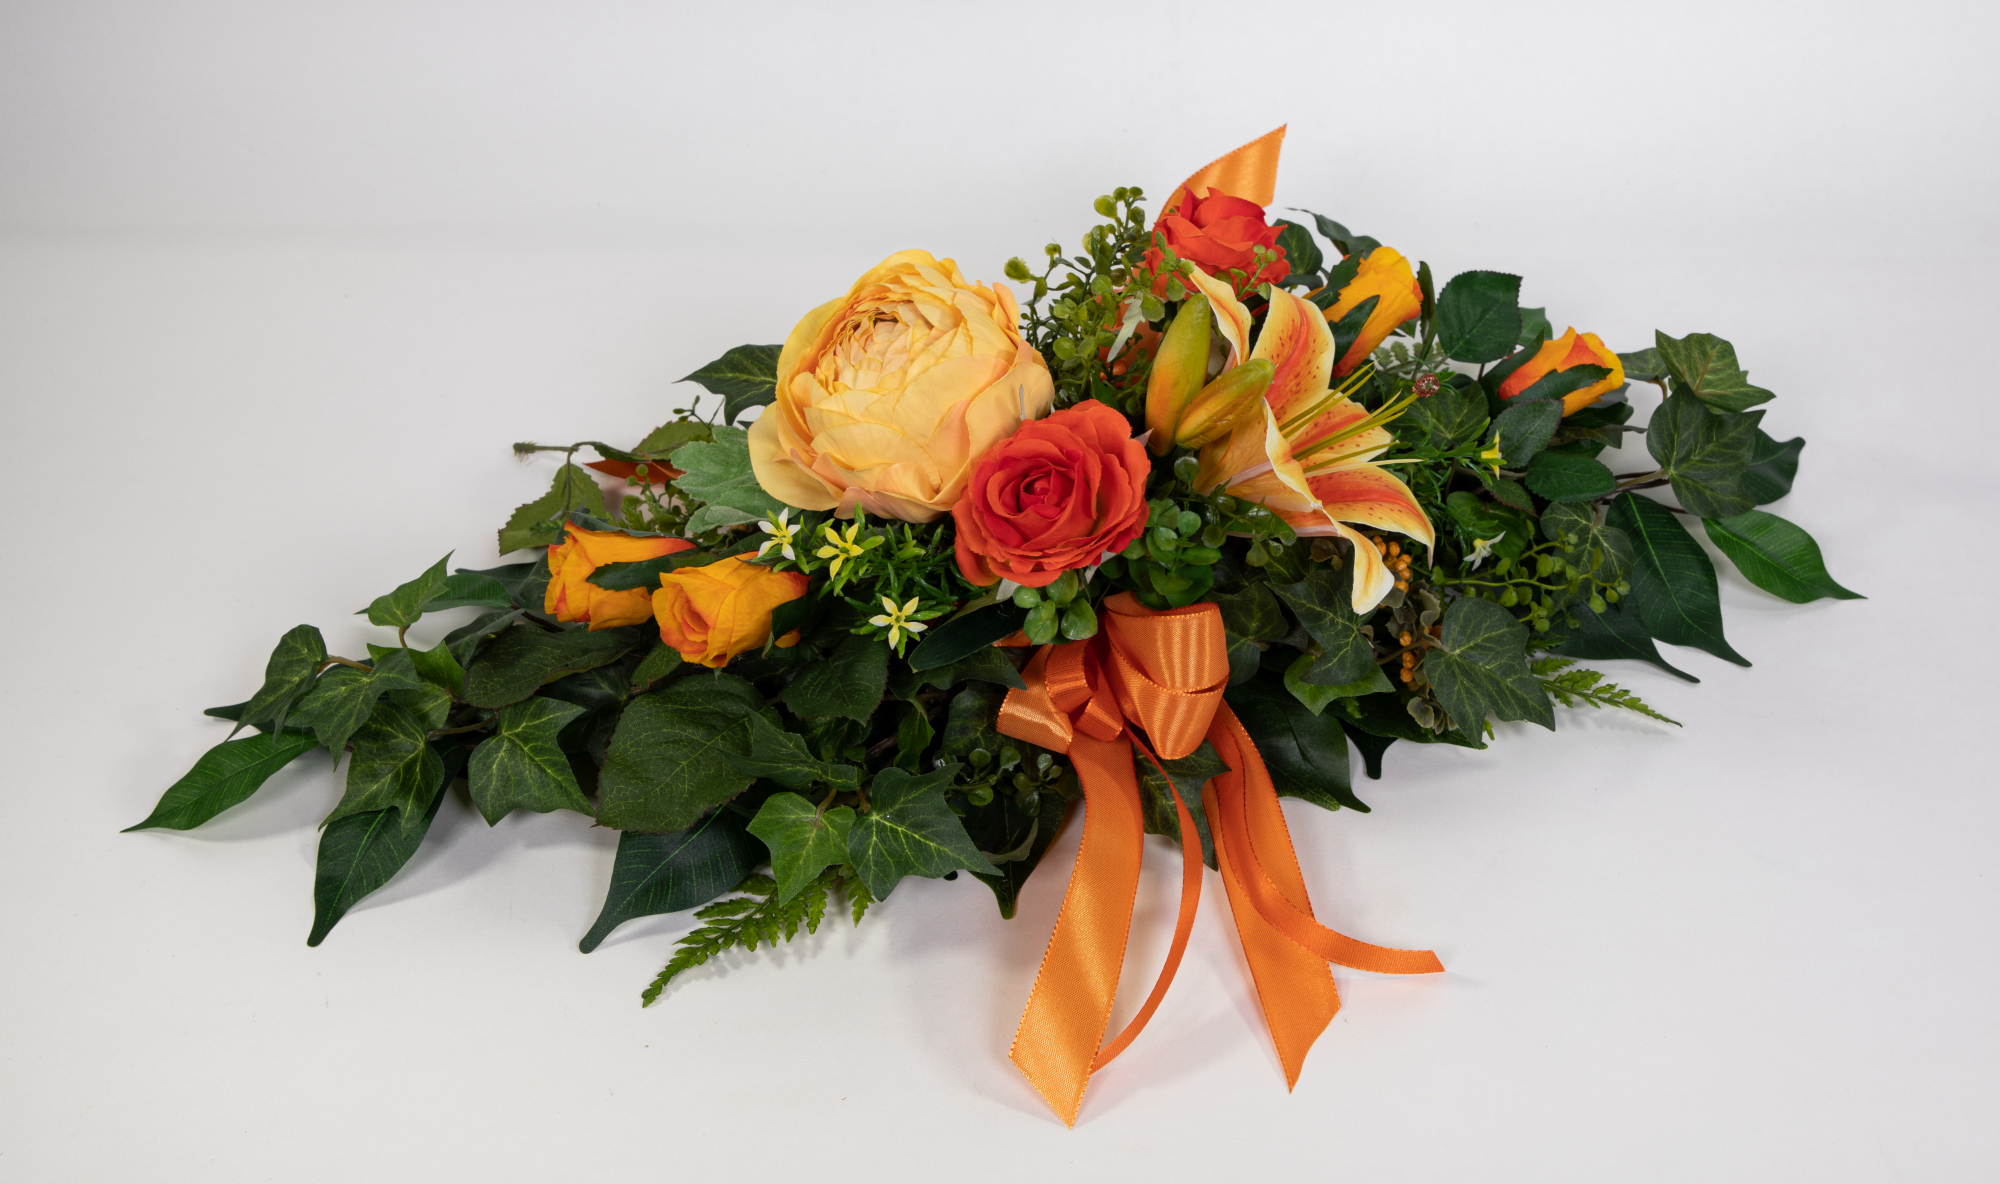 Tischgesteck länglich 60cm orange mit Rosen, Ranunkeln und Lilie Kunstblumen künstliche Blumen